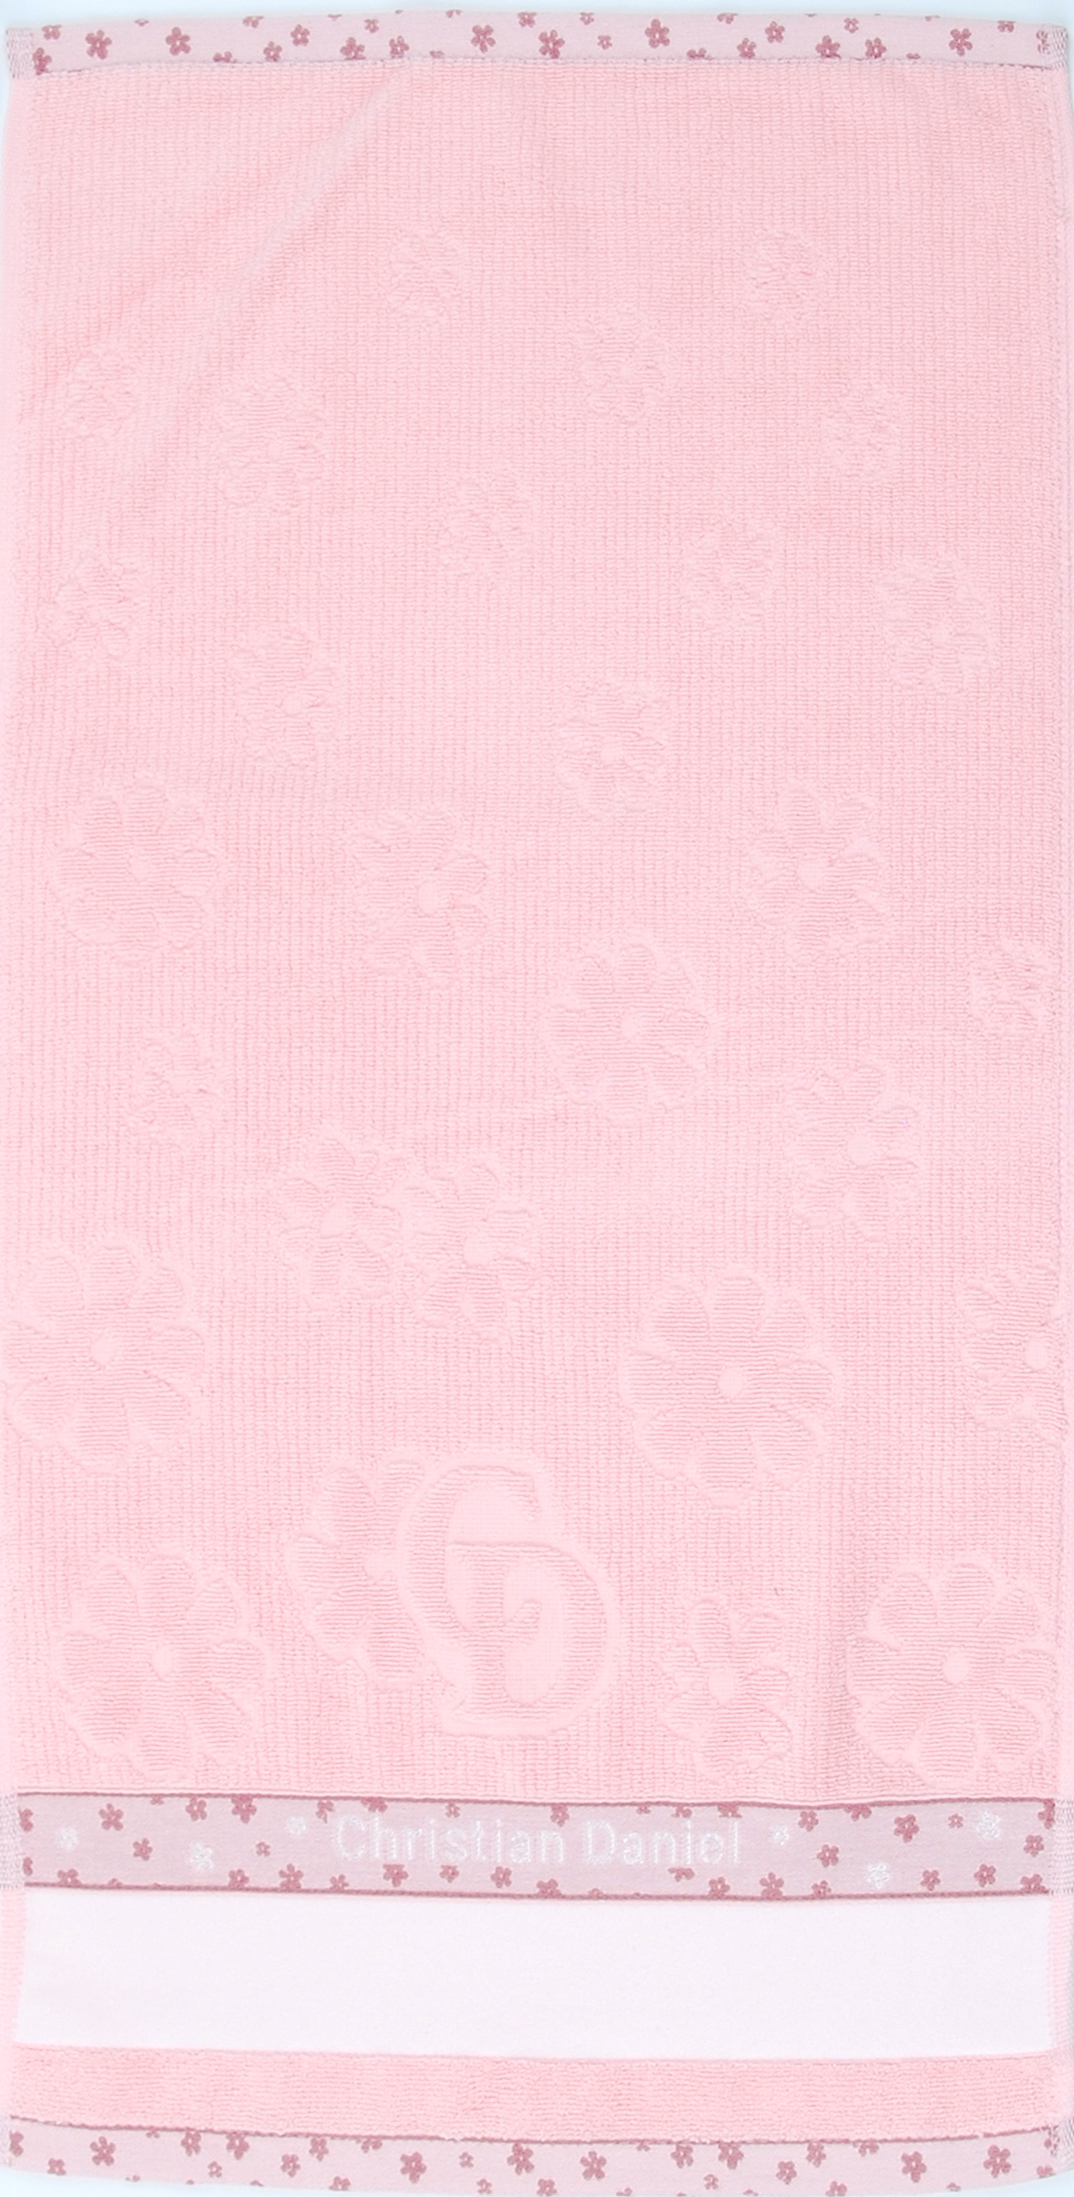 140-코스모스 핑크 전면.jpg